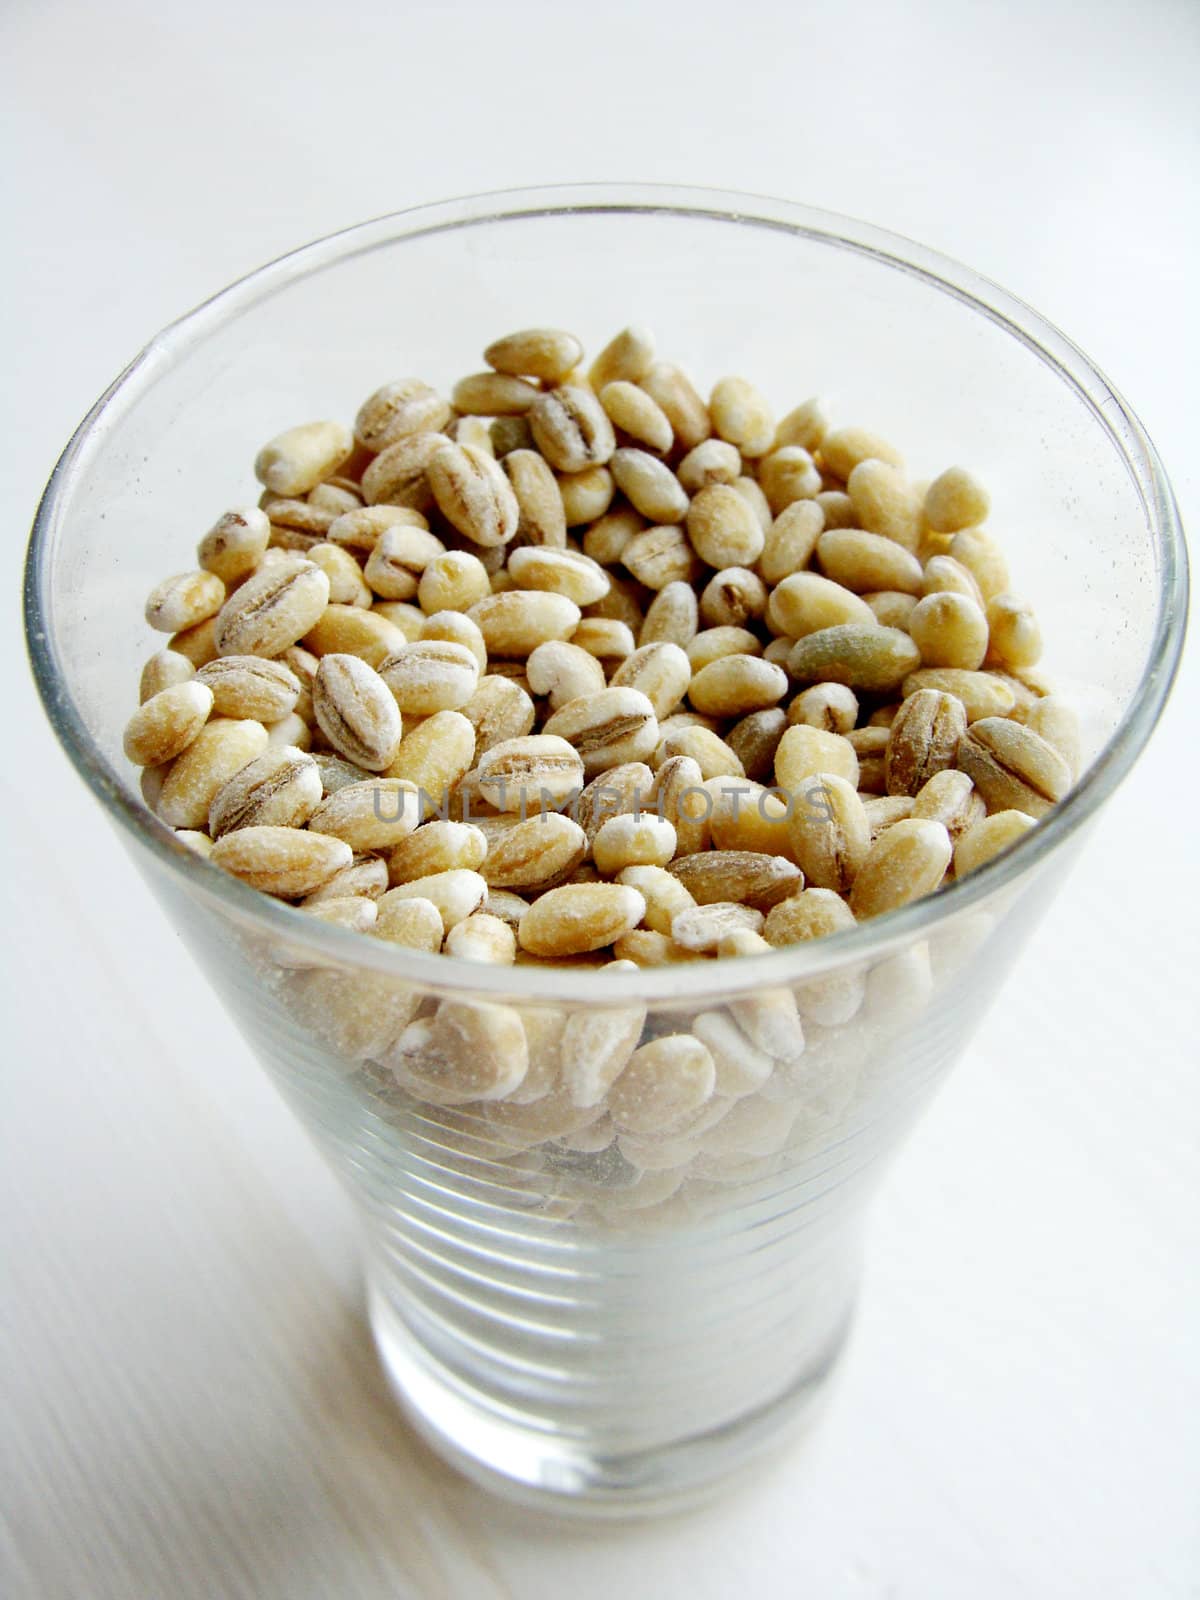 Pearl barley in a glass by koletvinov